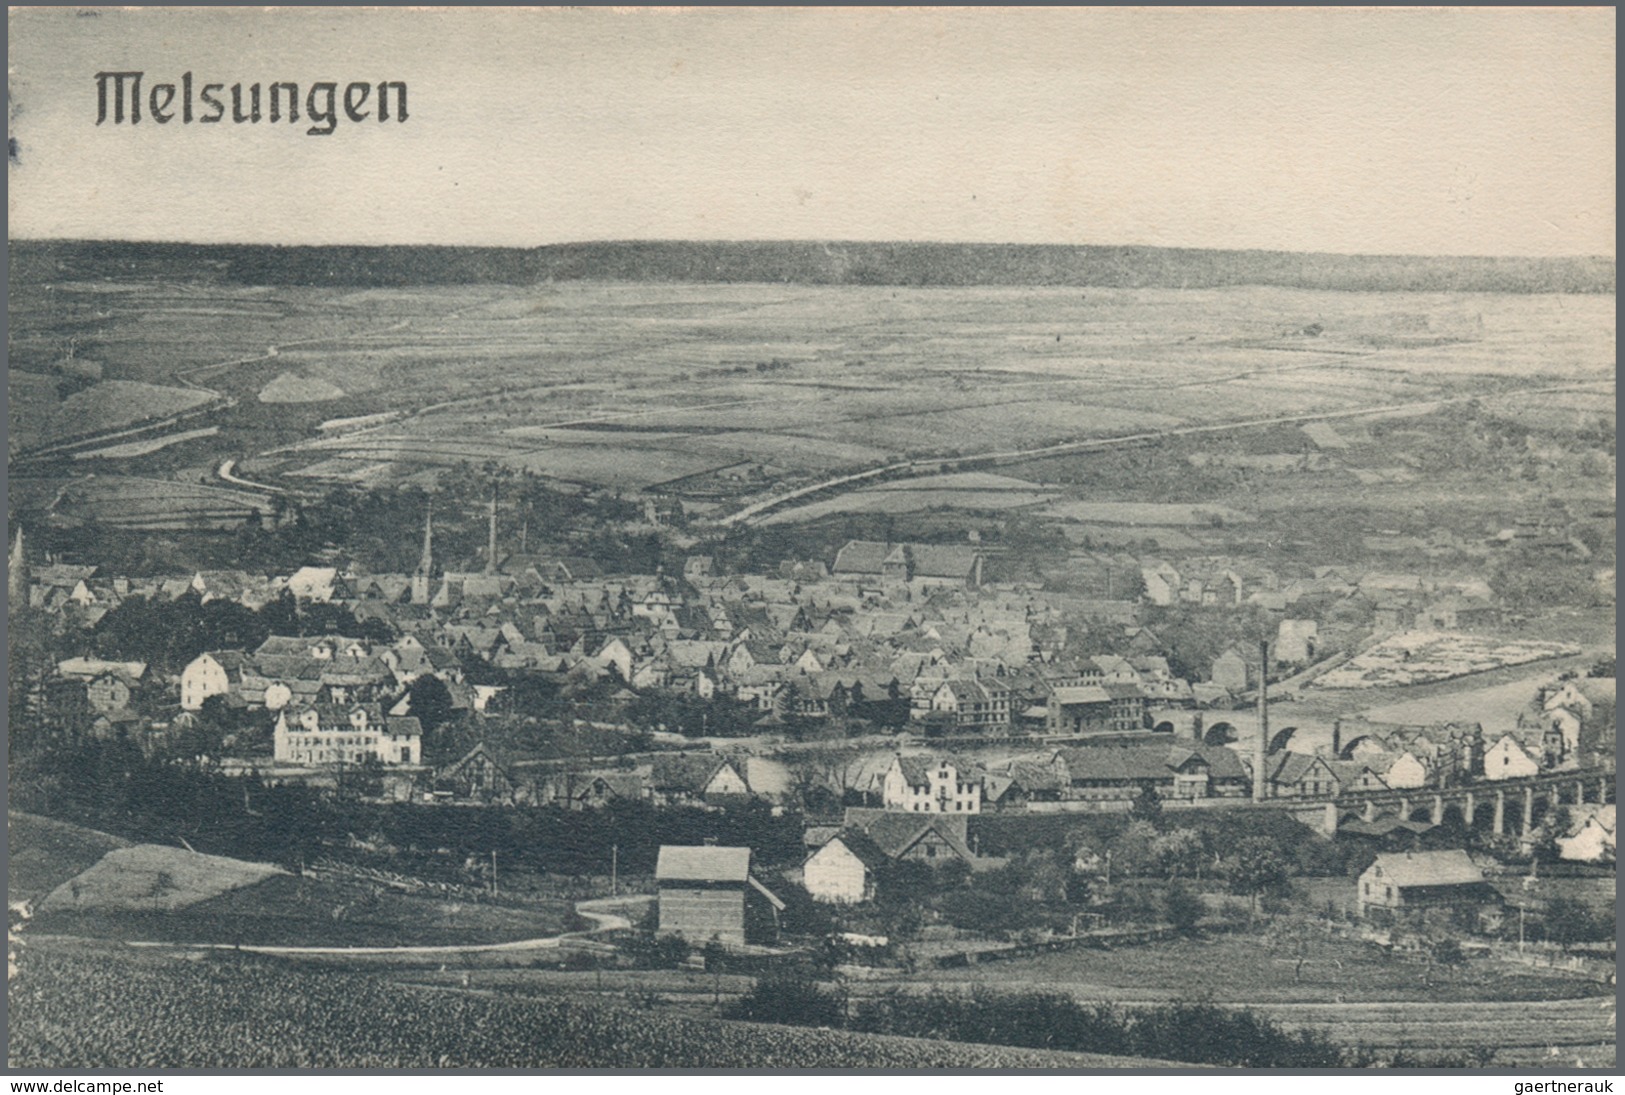 Ansichtskarten: Hessen: SCHACHTEL mit gut 350 historischen Ansichtskarten ab ca. 1885 bis in die 197